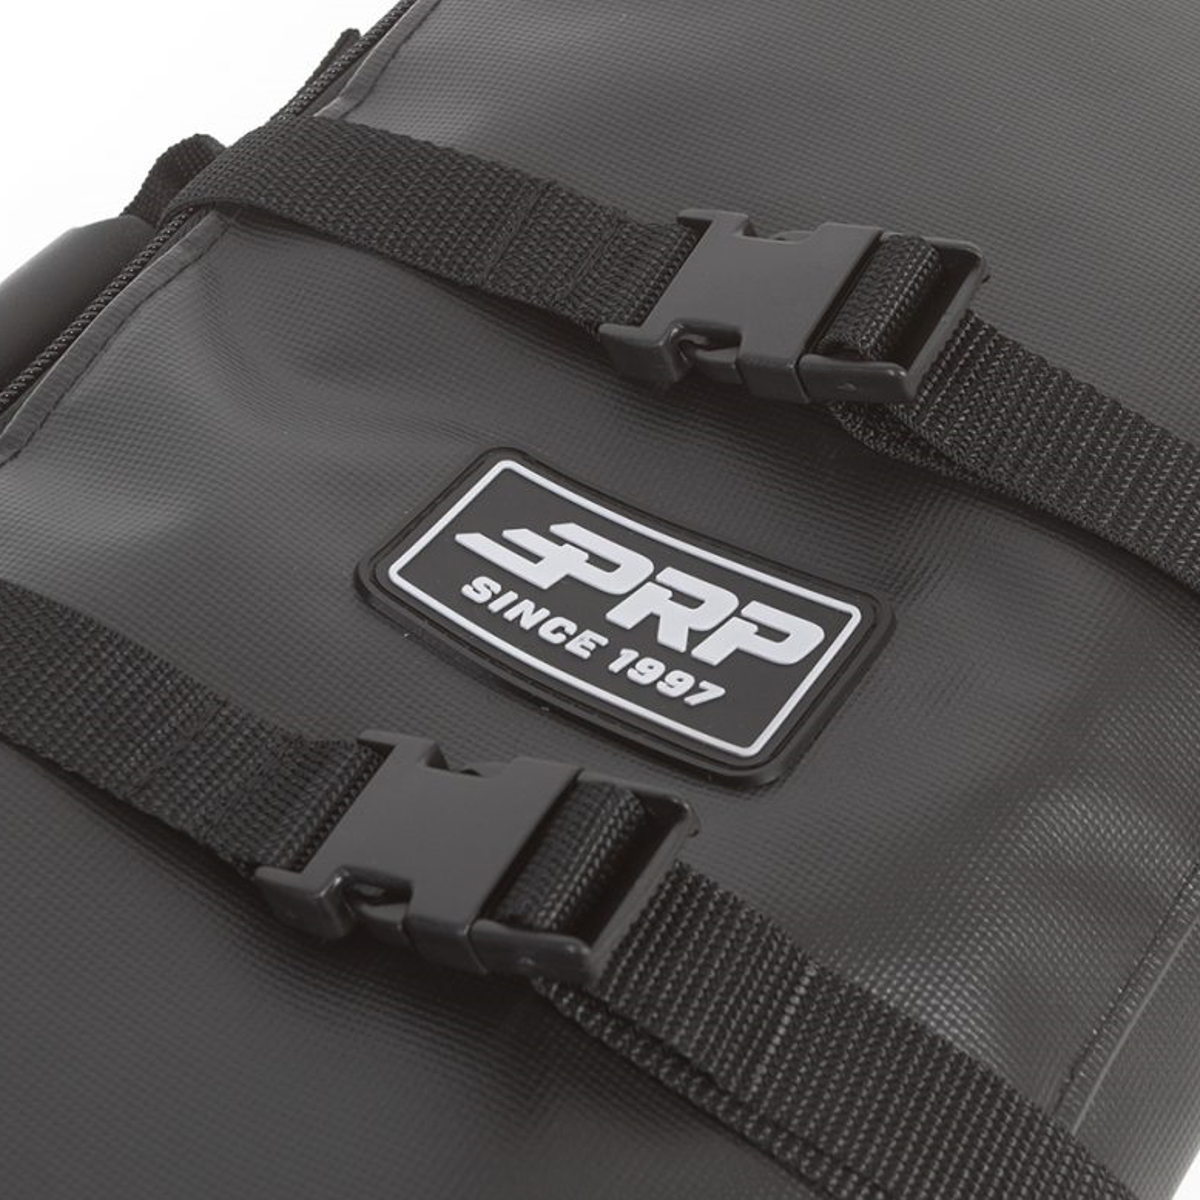 Spare Drive Belt Bag for UTVs – Large